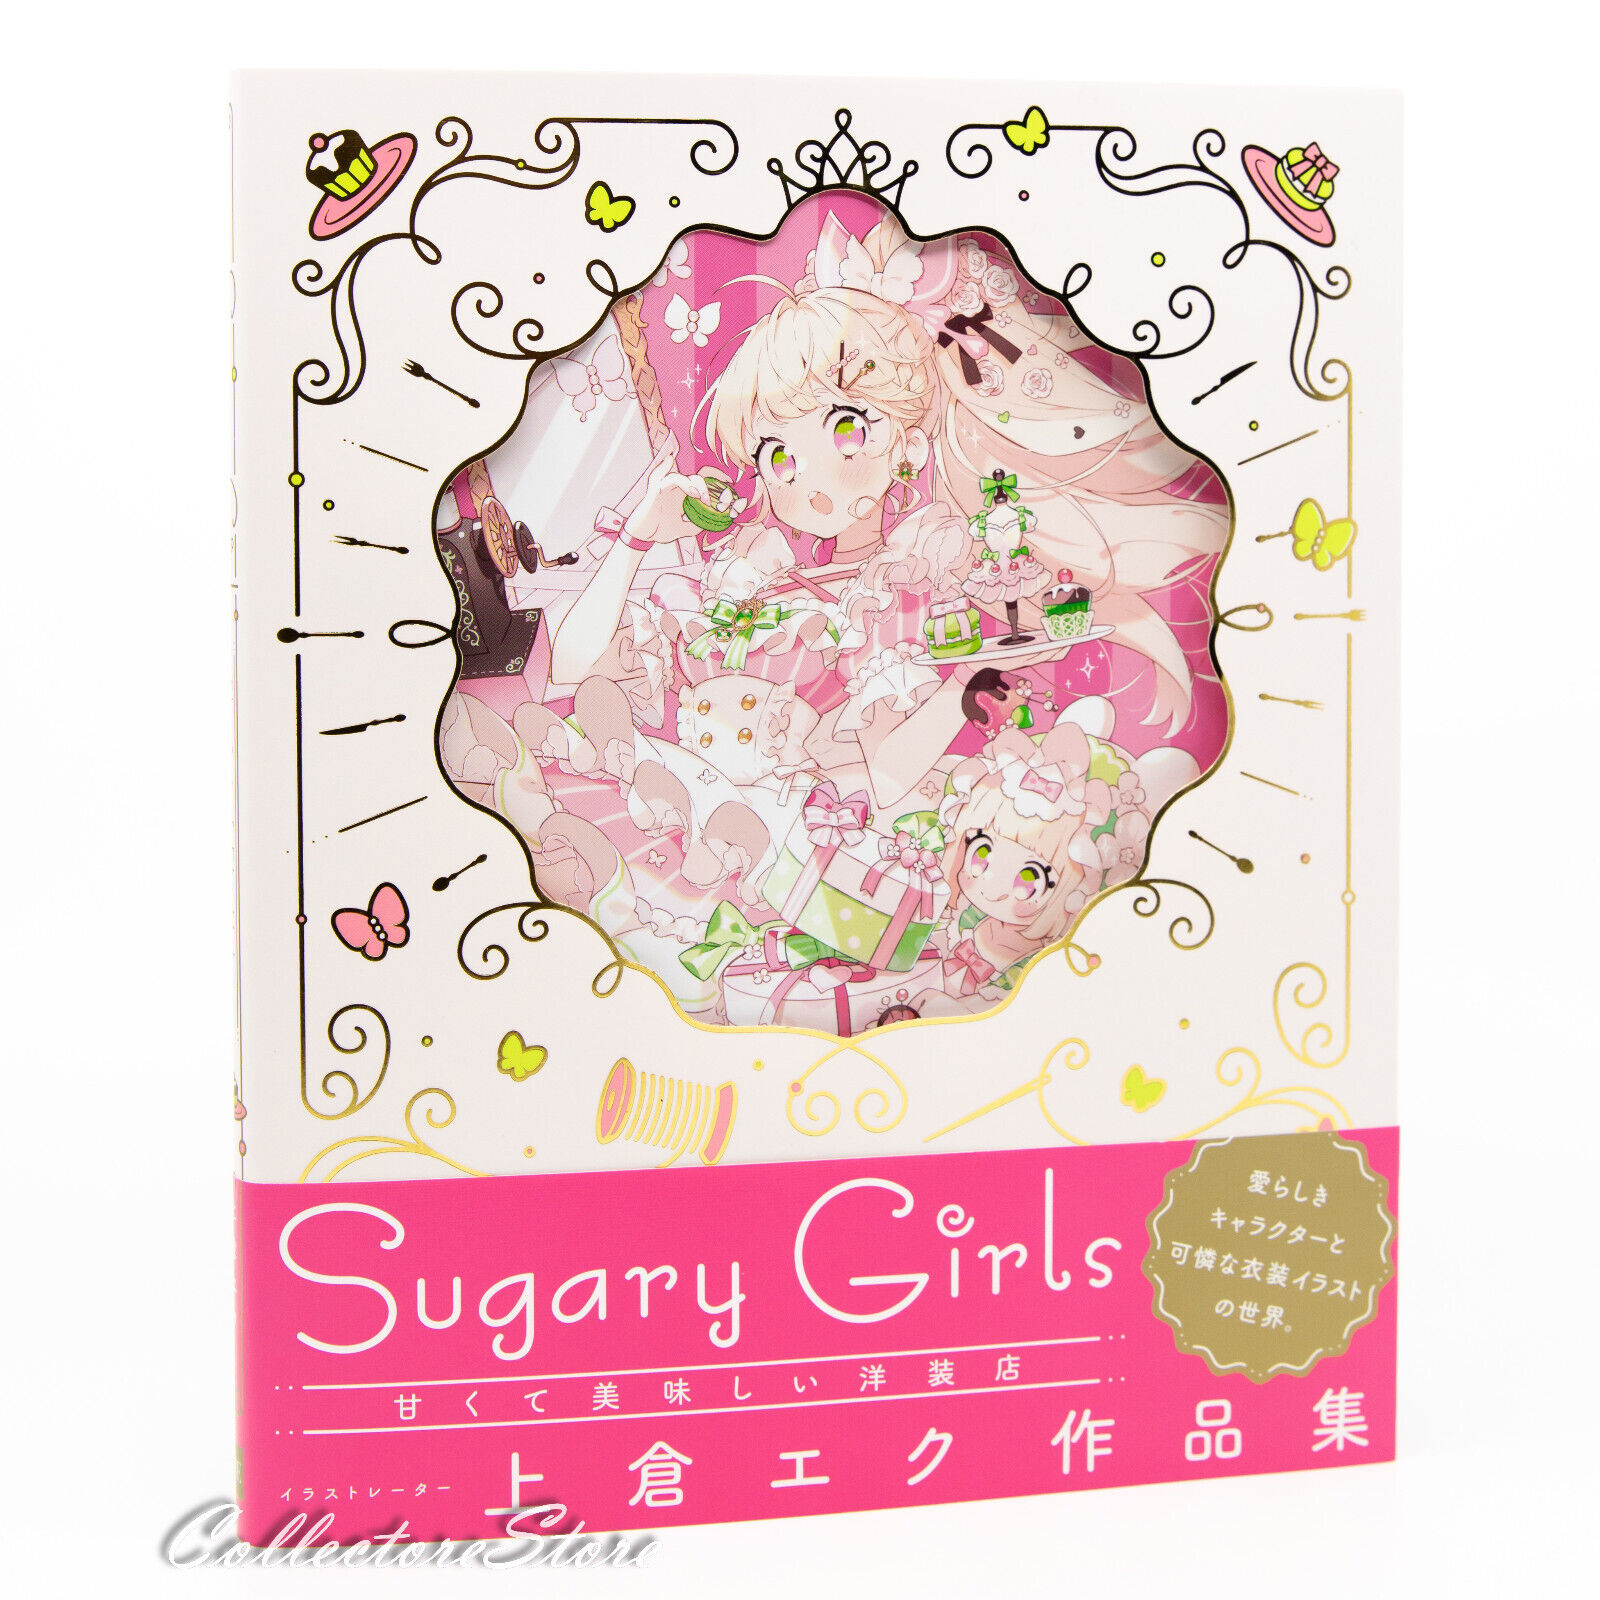 Sugary Girls The Art of Eku Uekura (AIR/DHL)